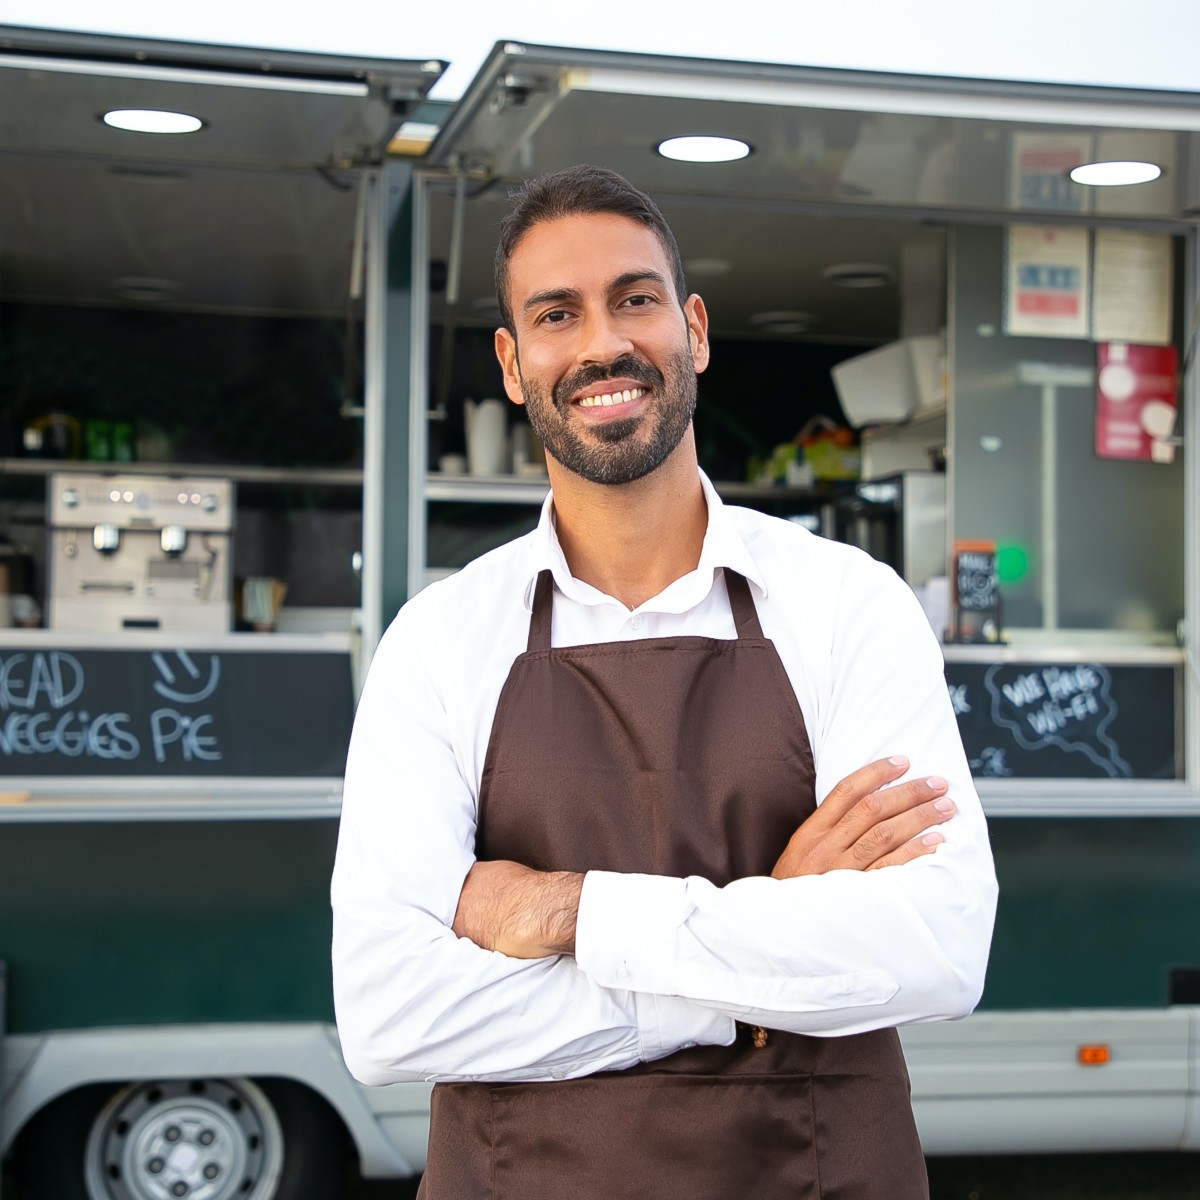 Un hombre con delantal marrón se cruza de brazos y sonríe frente a un camión de comida verde.